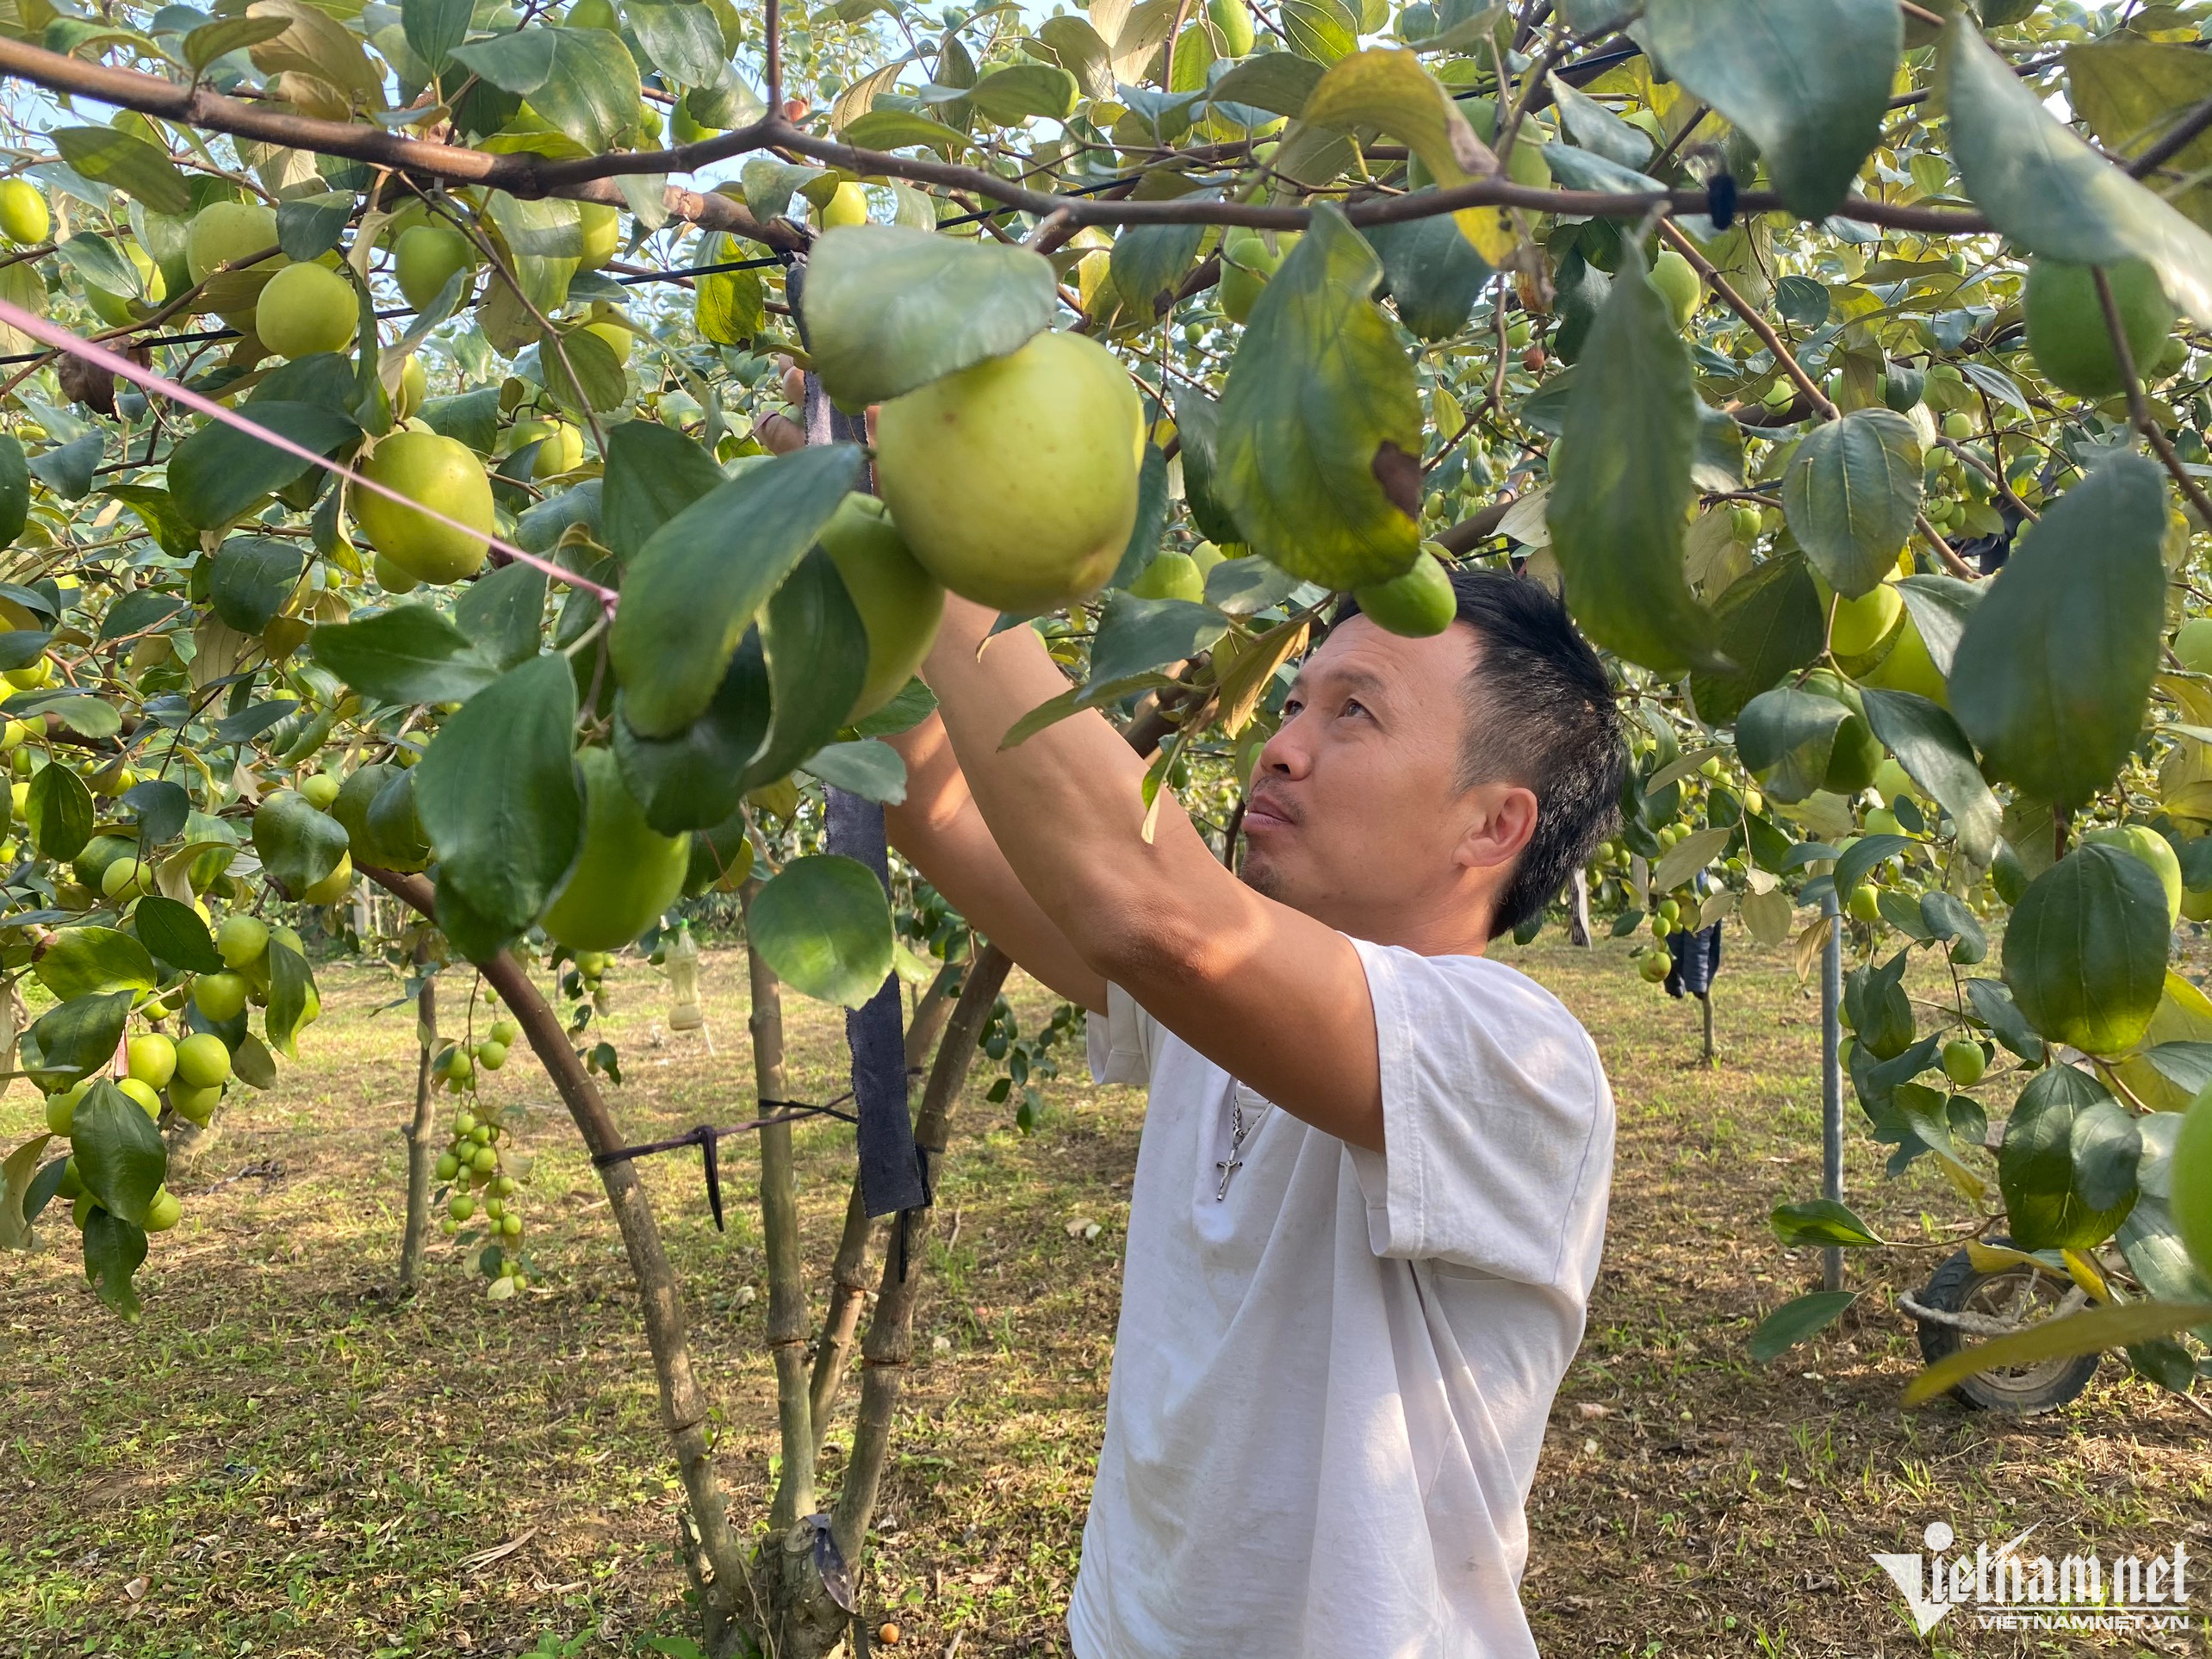 Liều trồng 300 gốc táo ở vùng ‘đất chết’, thu cả trăm triệu đồng-1